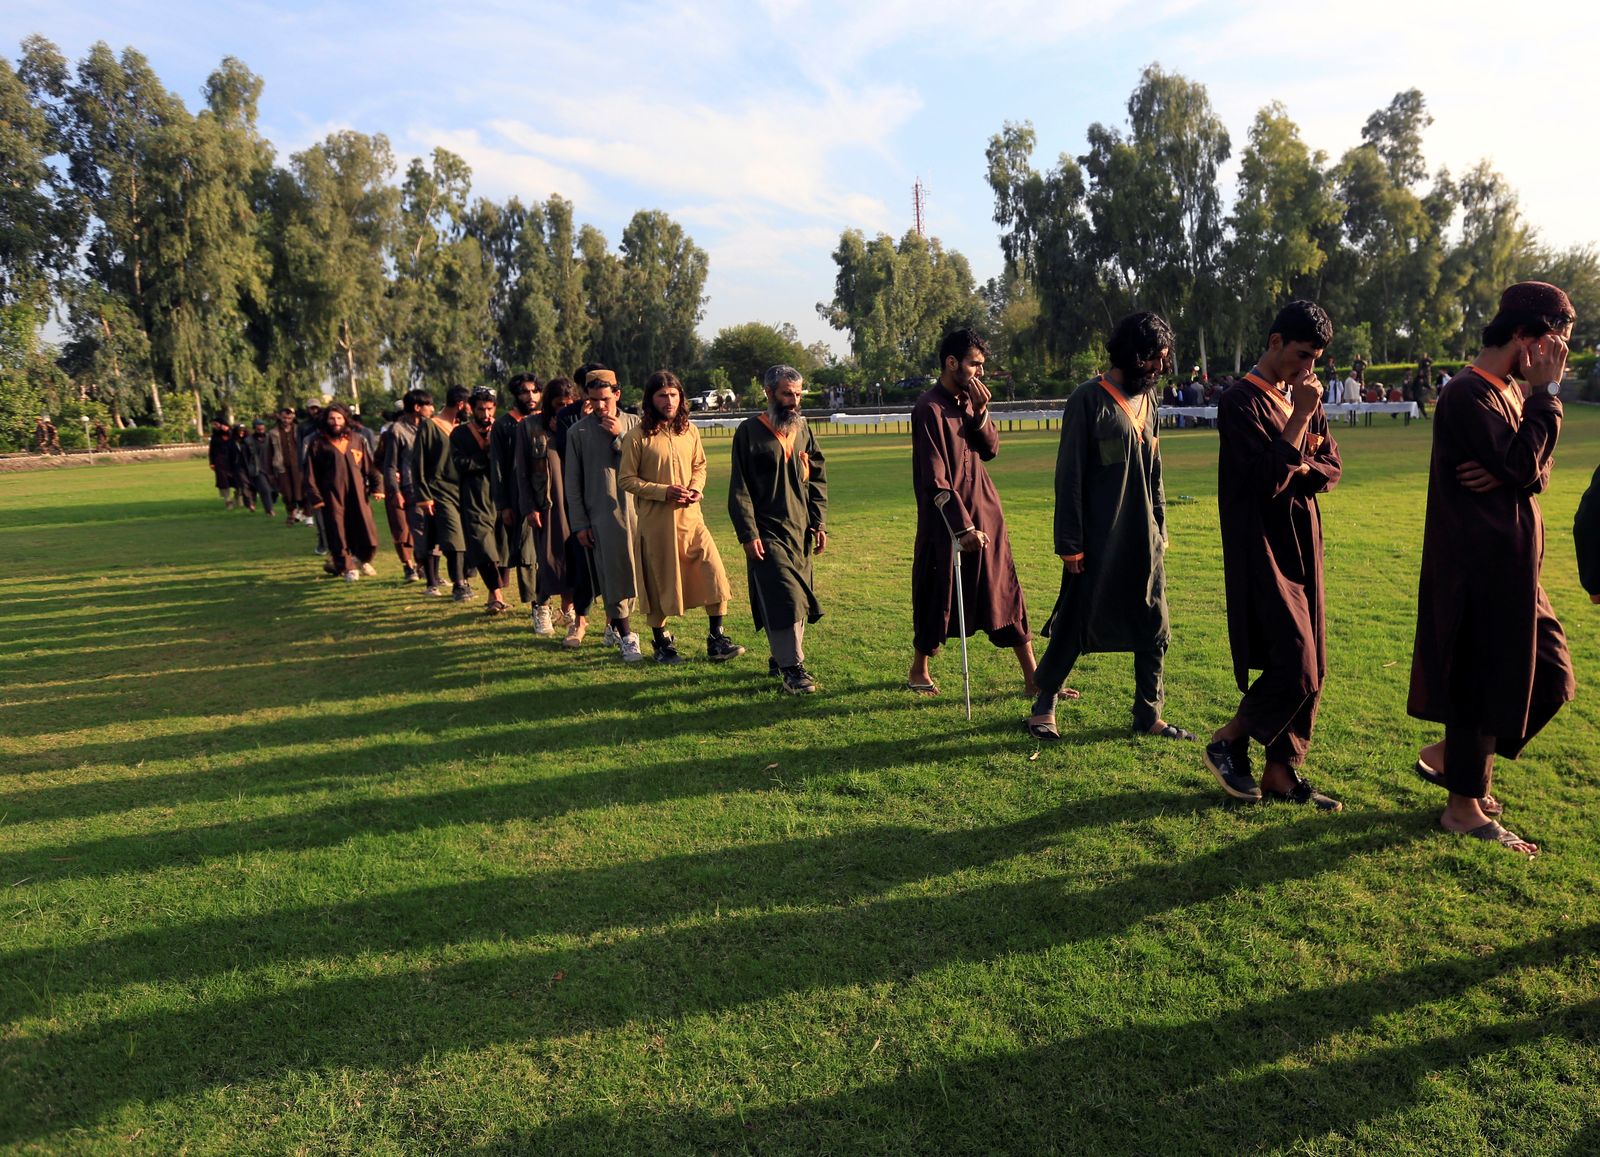 عدد من أفراد تنظيم داعش في أفغانستان بعد استسلمهم للحكومة السابقة عام 201 - REUTERS